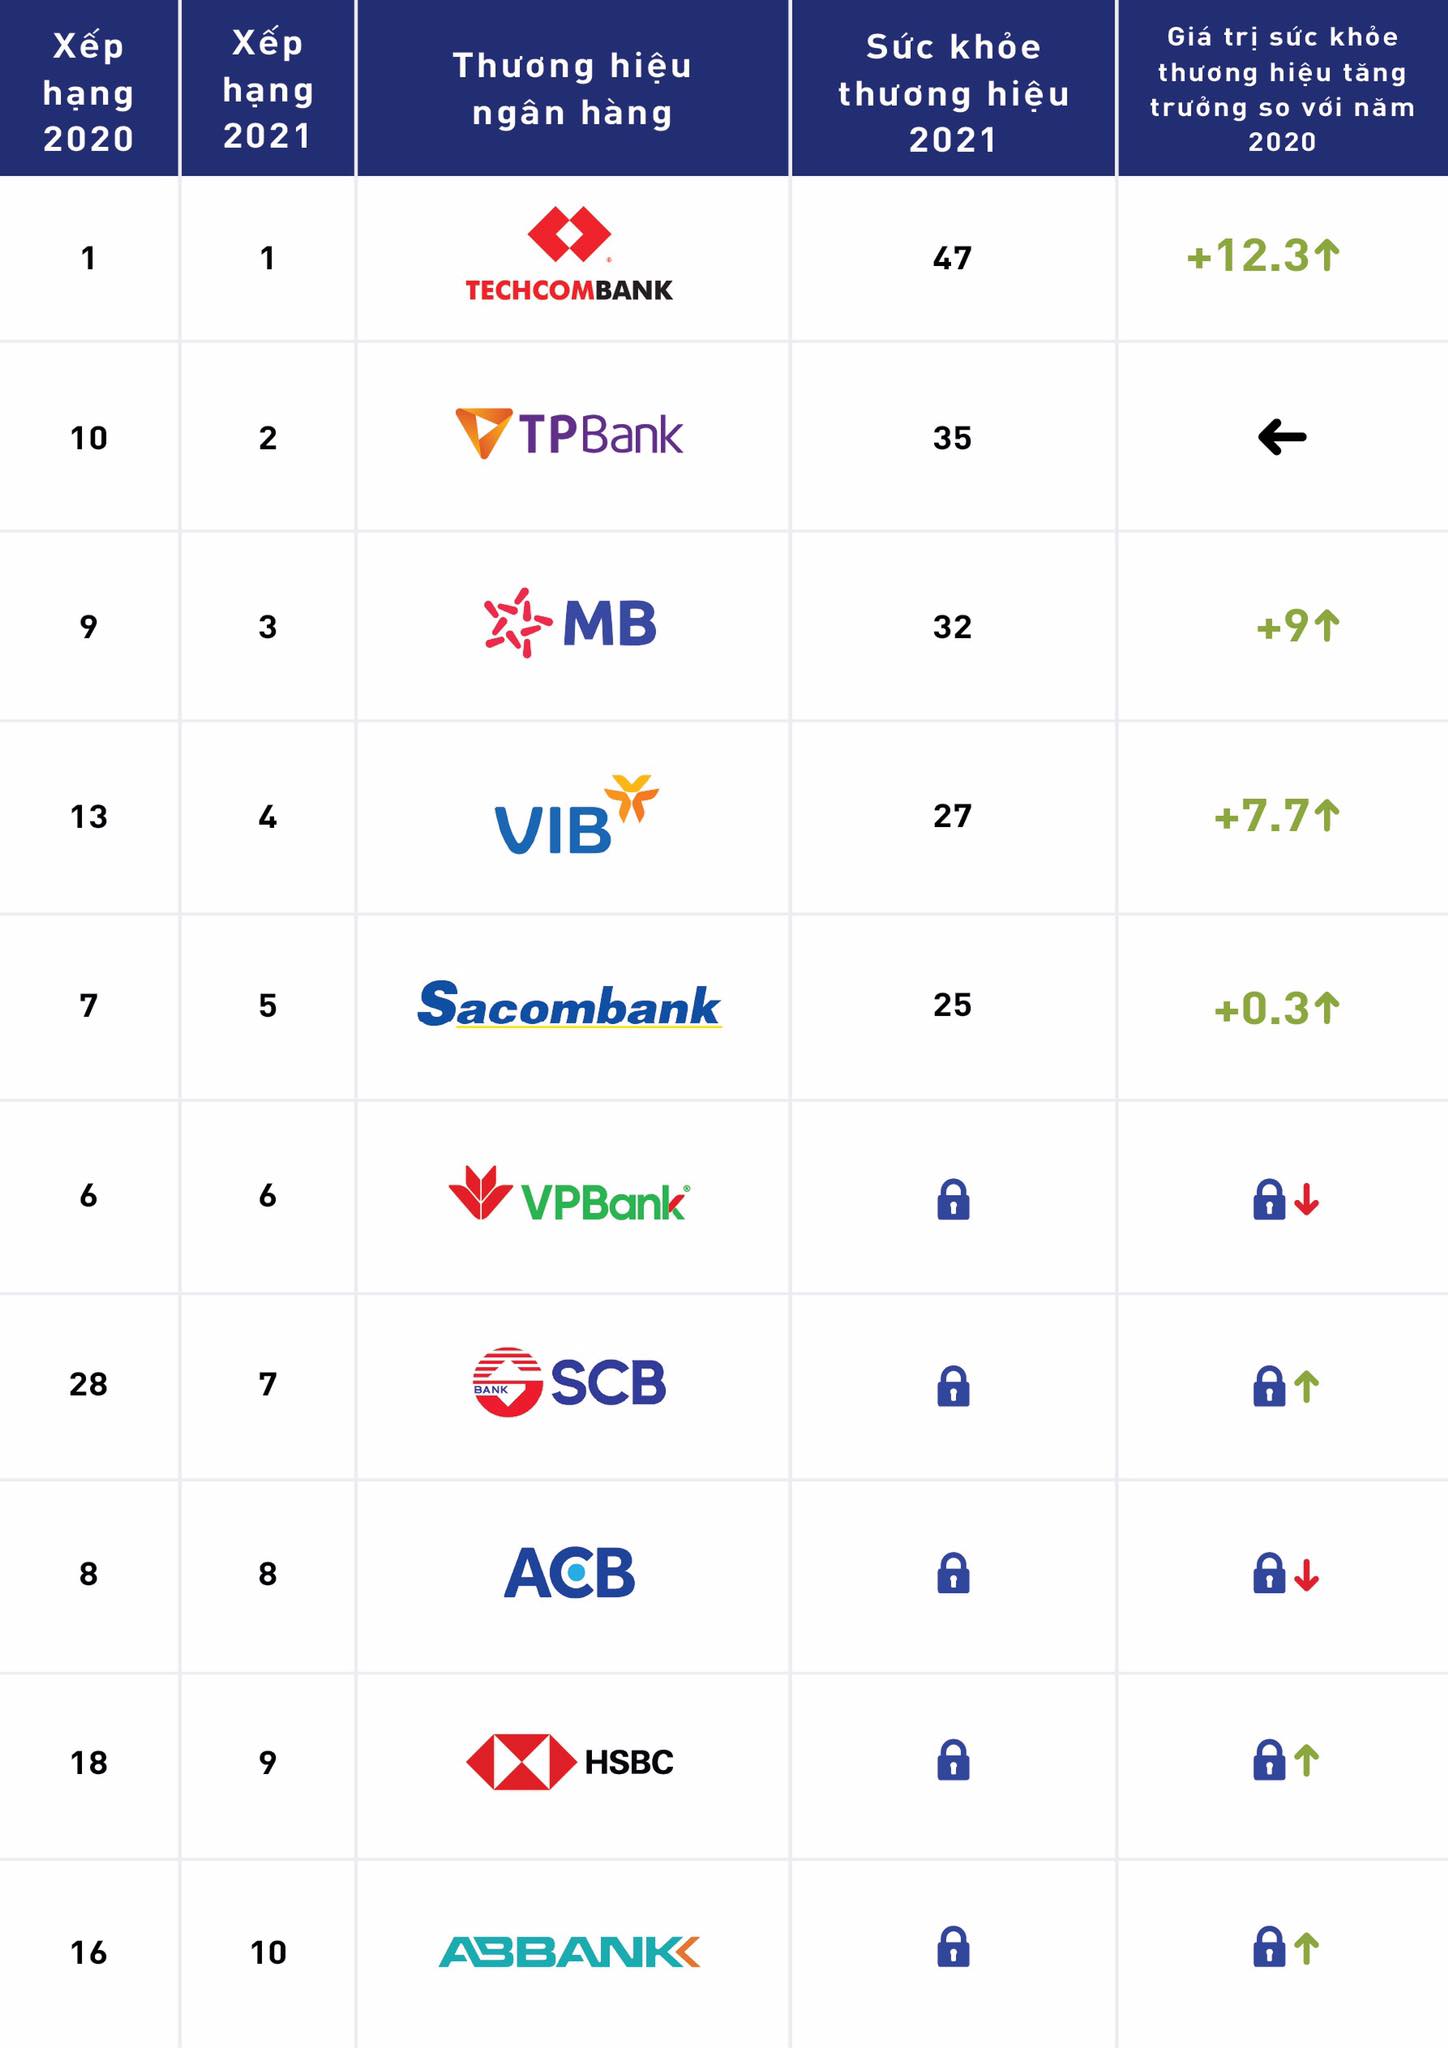 Top 10 thương hiệu ngân hàng mạnh nhất Việt Nam: Techcombank đứng đầu, bỏ xa 9 ngân hàng còn lại! - Ảnh 1.